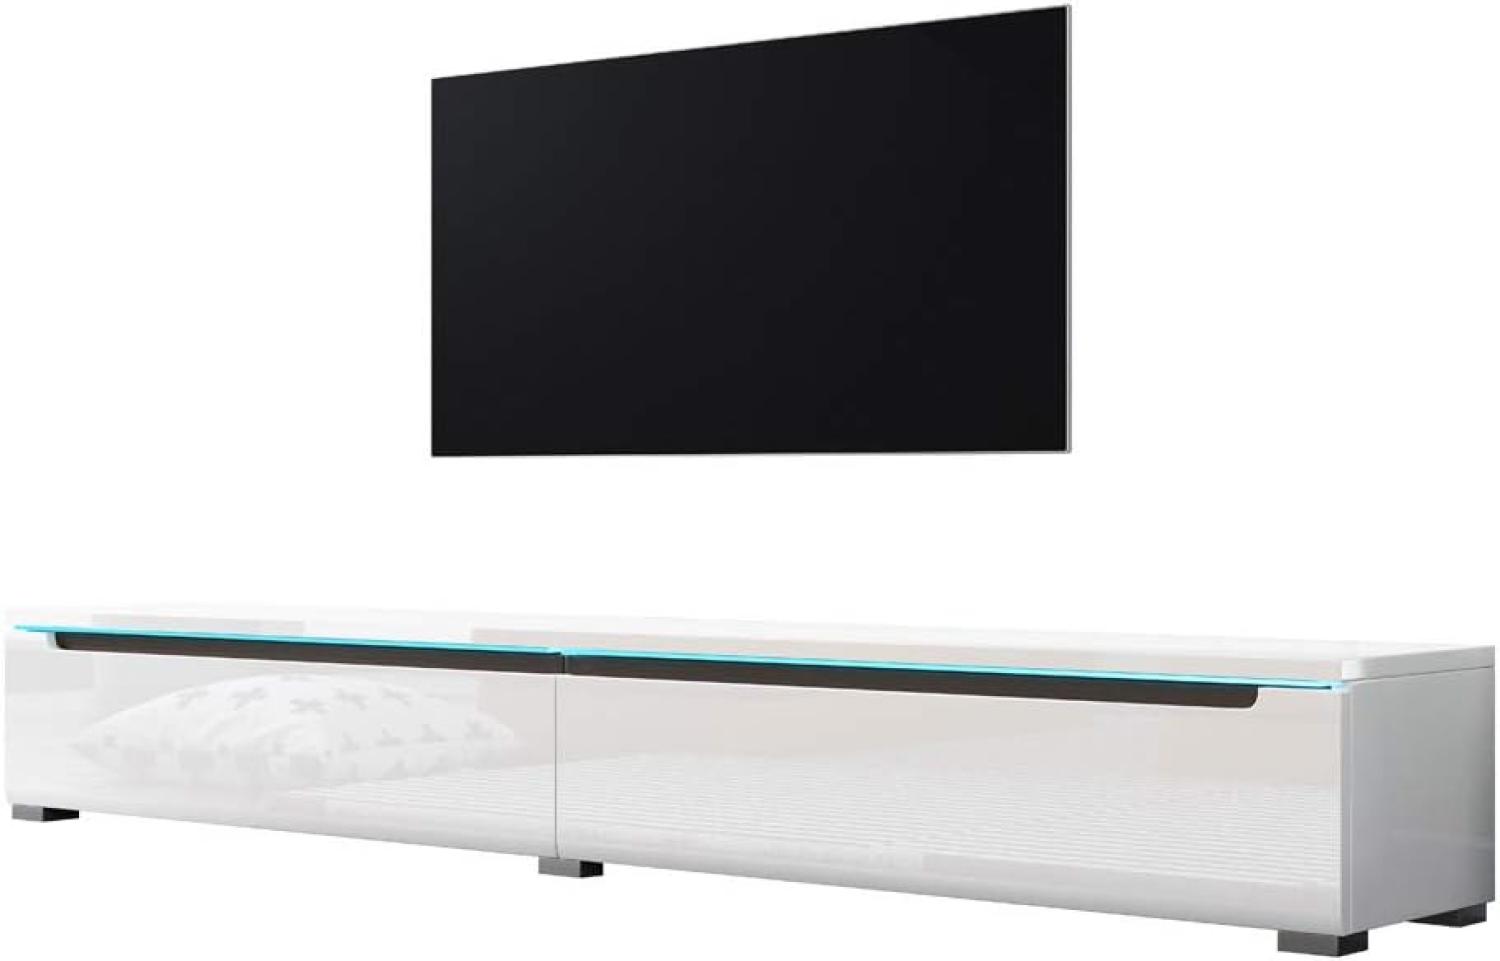 Swift – Fernsehschrank/Tv-Lowboard In Weiß Hochglanz Mit Led Hängend Oder Stehend 180 Cm Bild 1